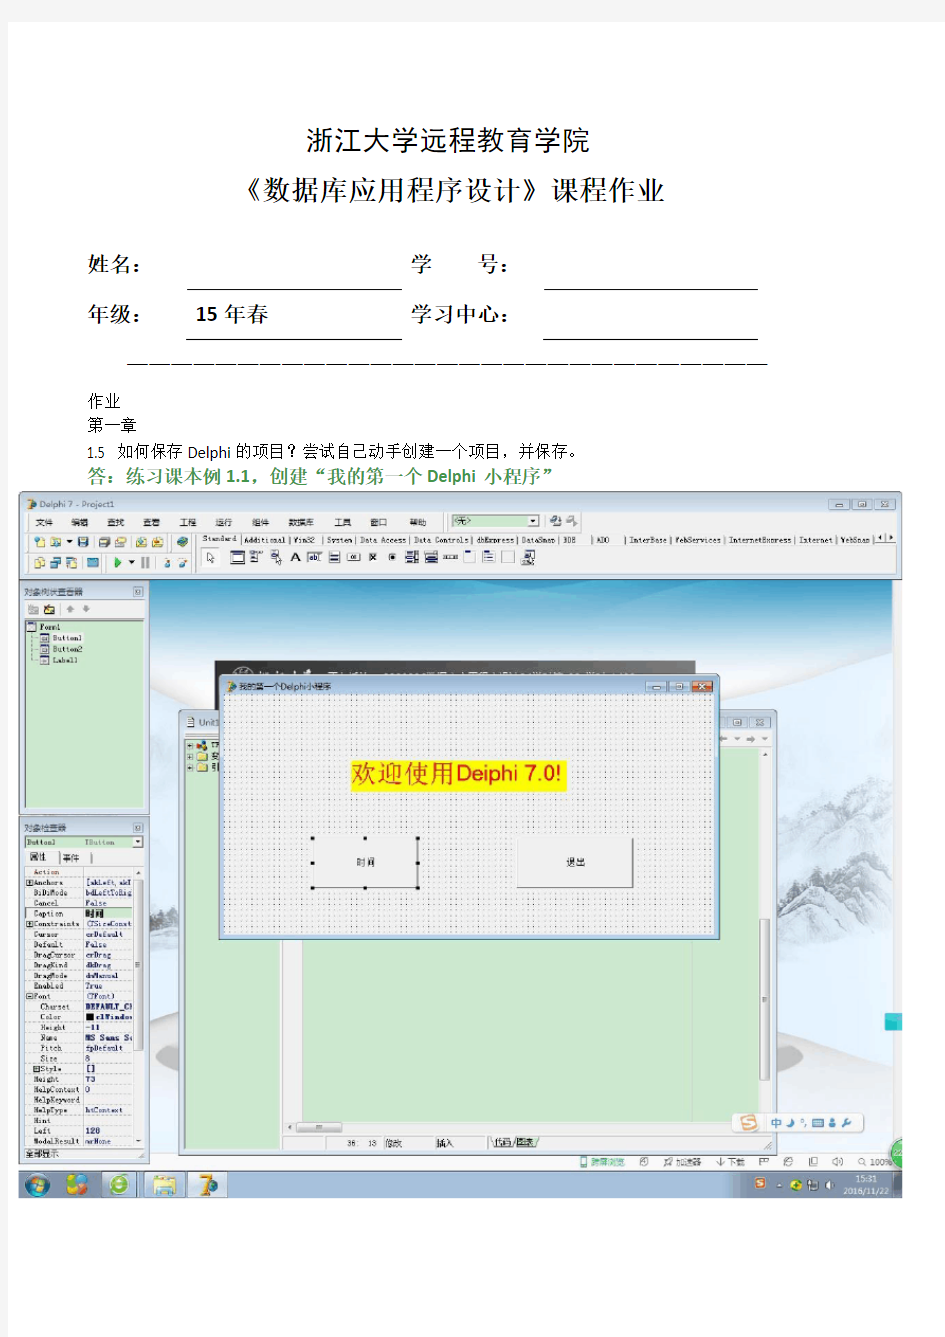 浙大远程16年秋数据库应用程序设计离线作业(兼容)